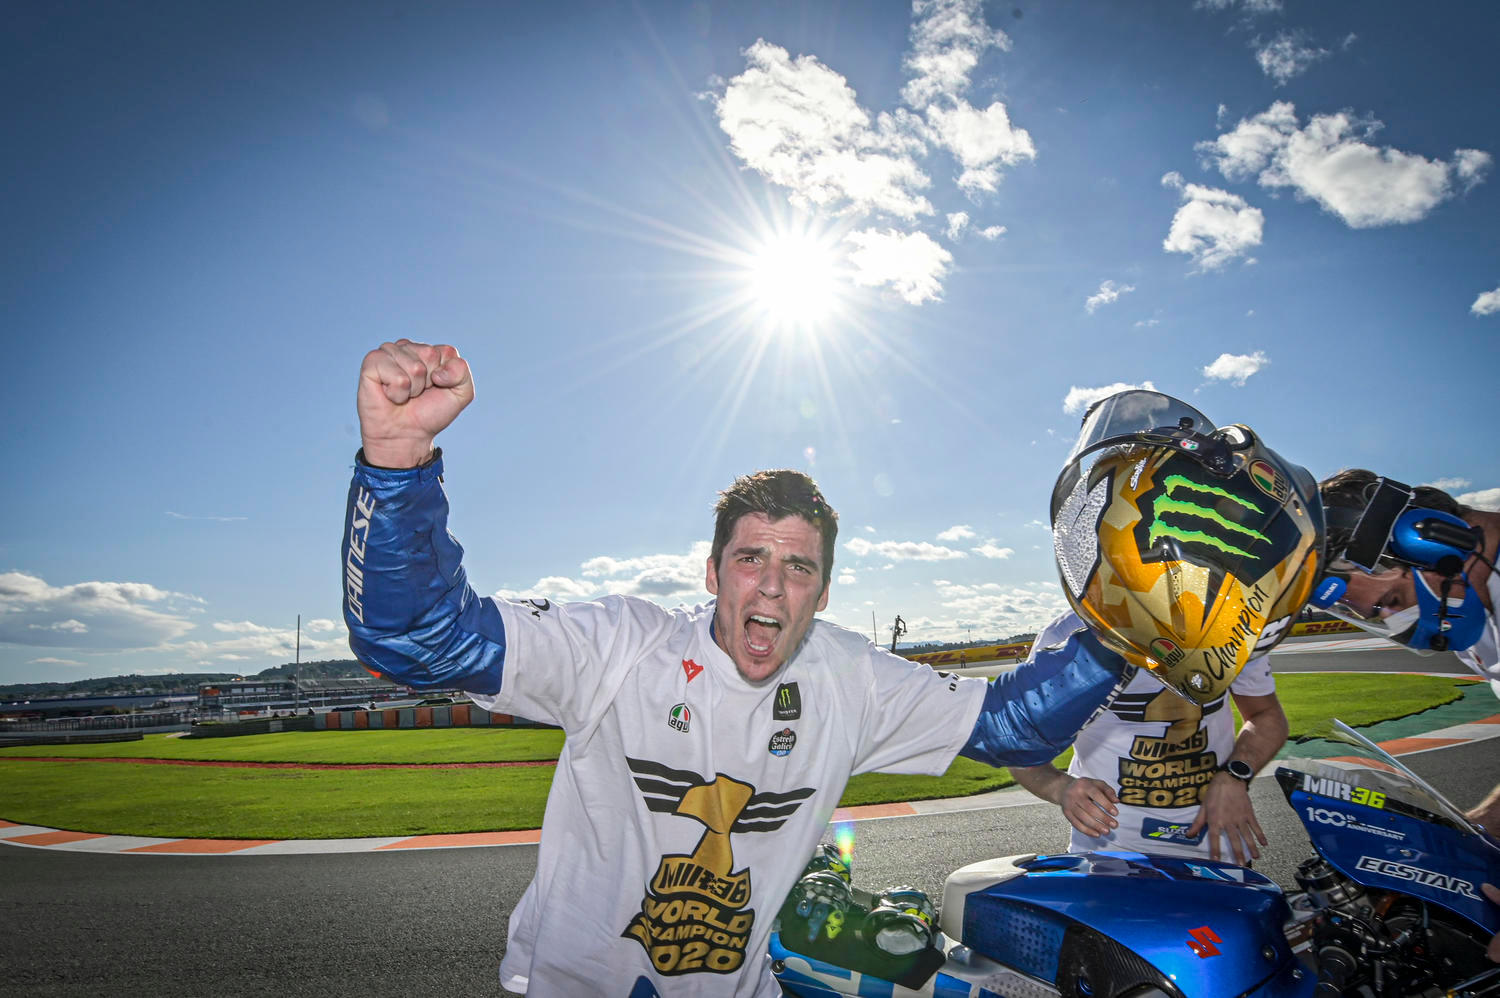 MotoGP Mir Suzuki World Champion 2020